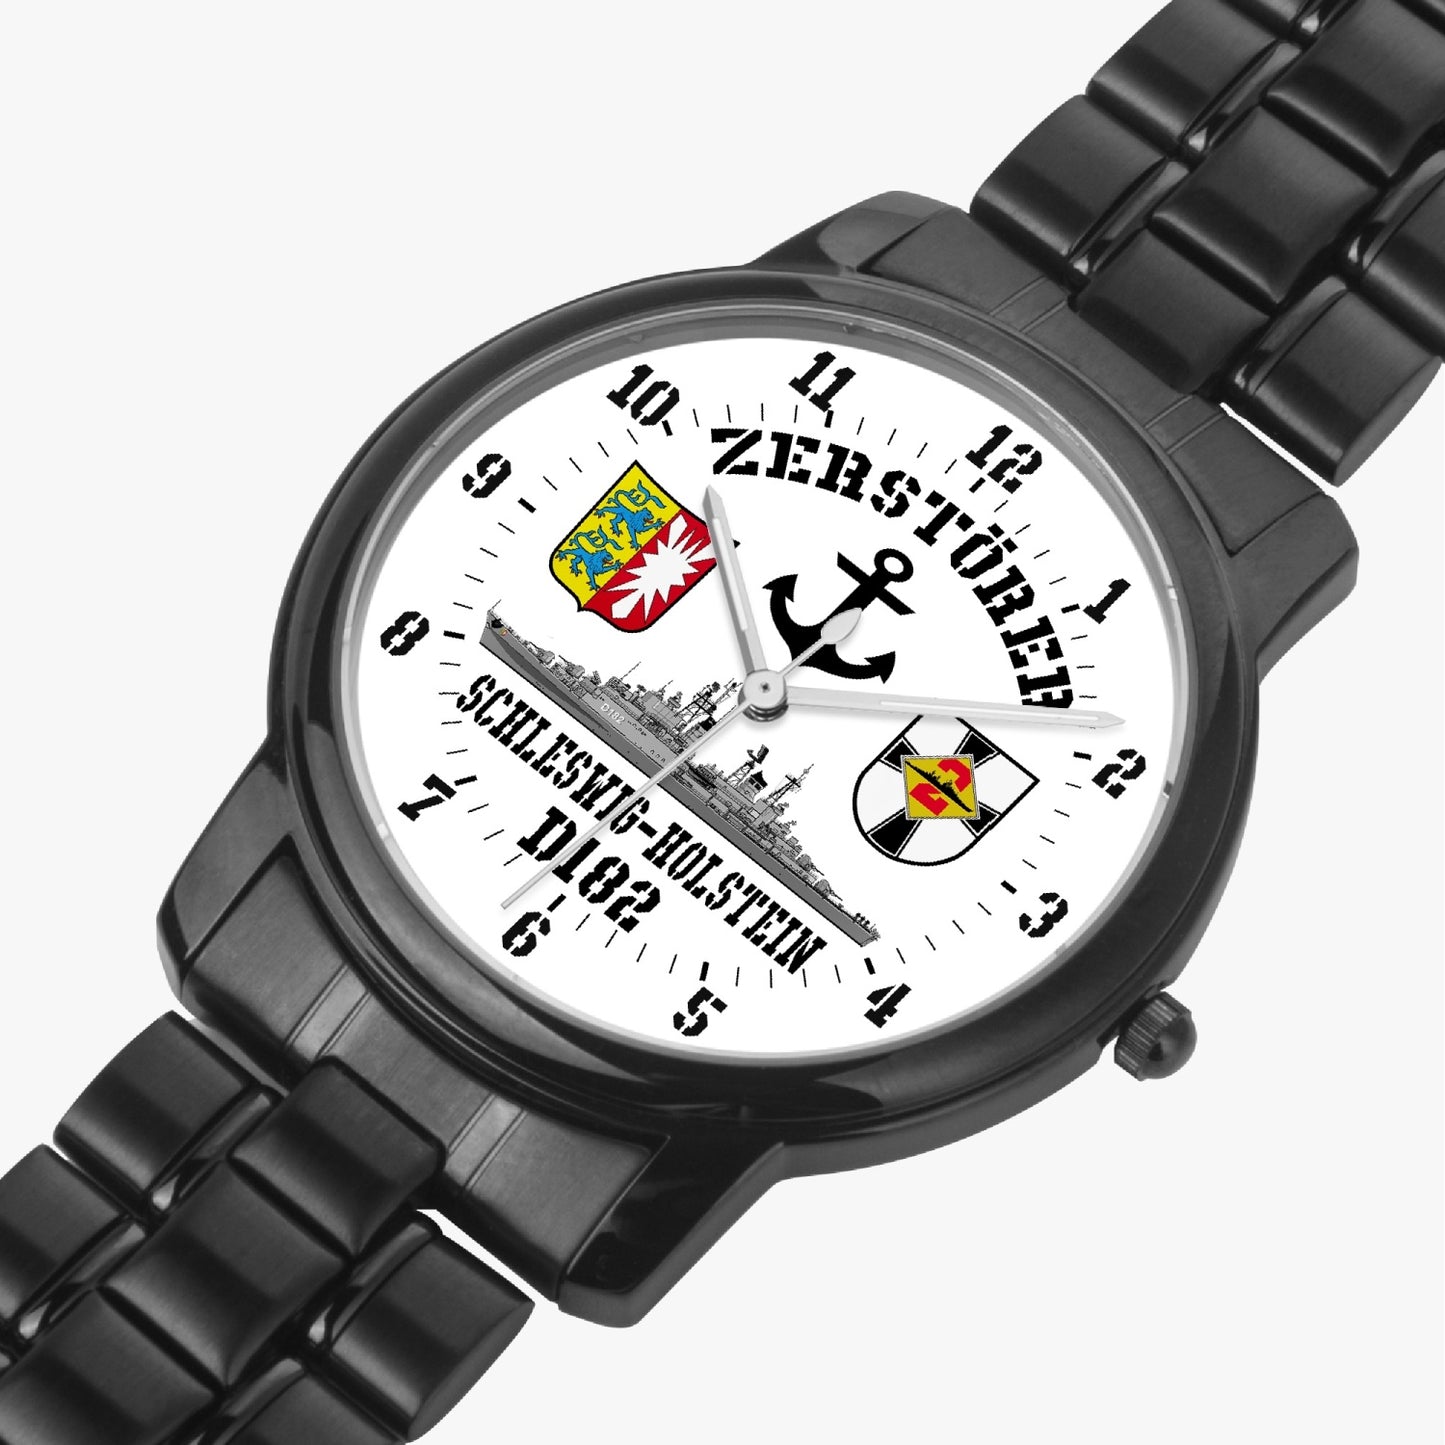 Armbanduhr Zerstörer D182 SCHLESWIG-HOLSTEIN Batterie